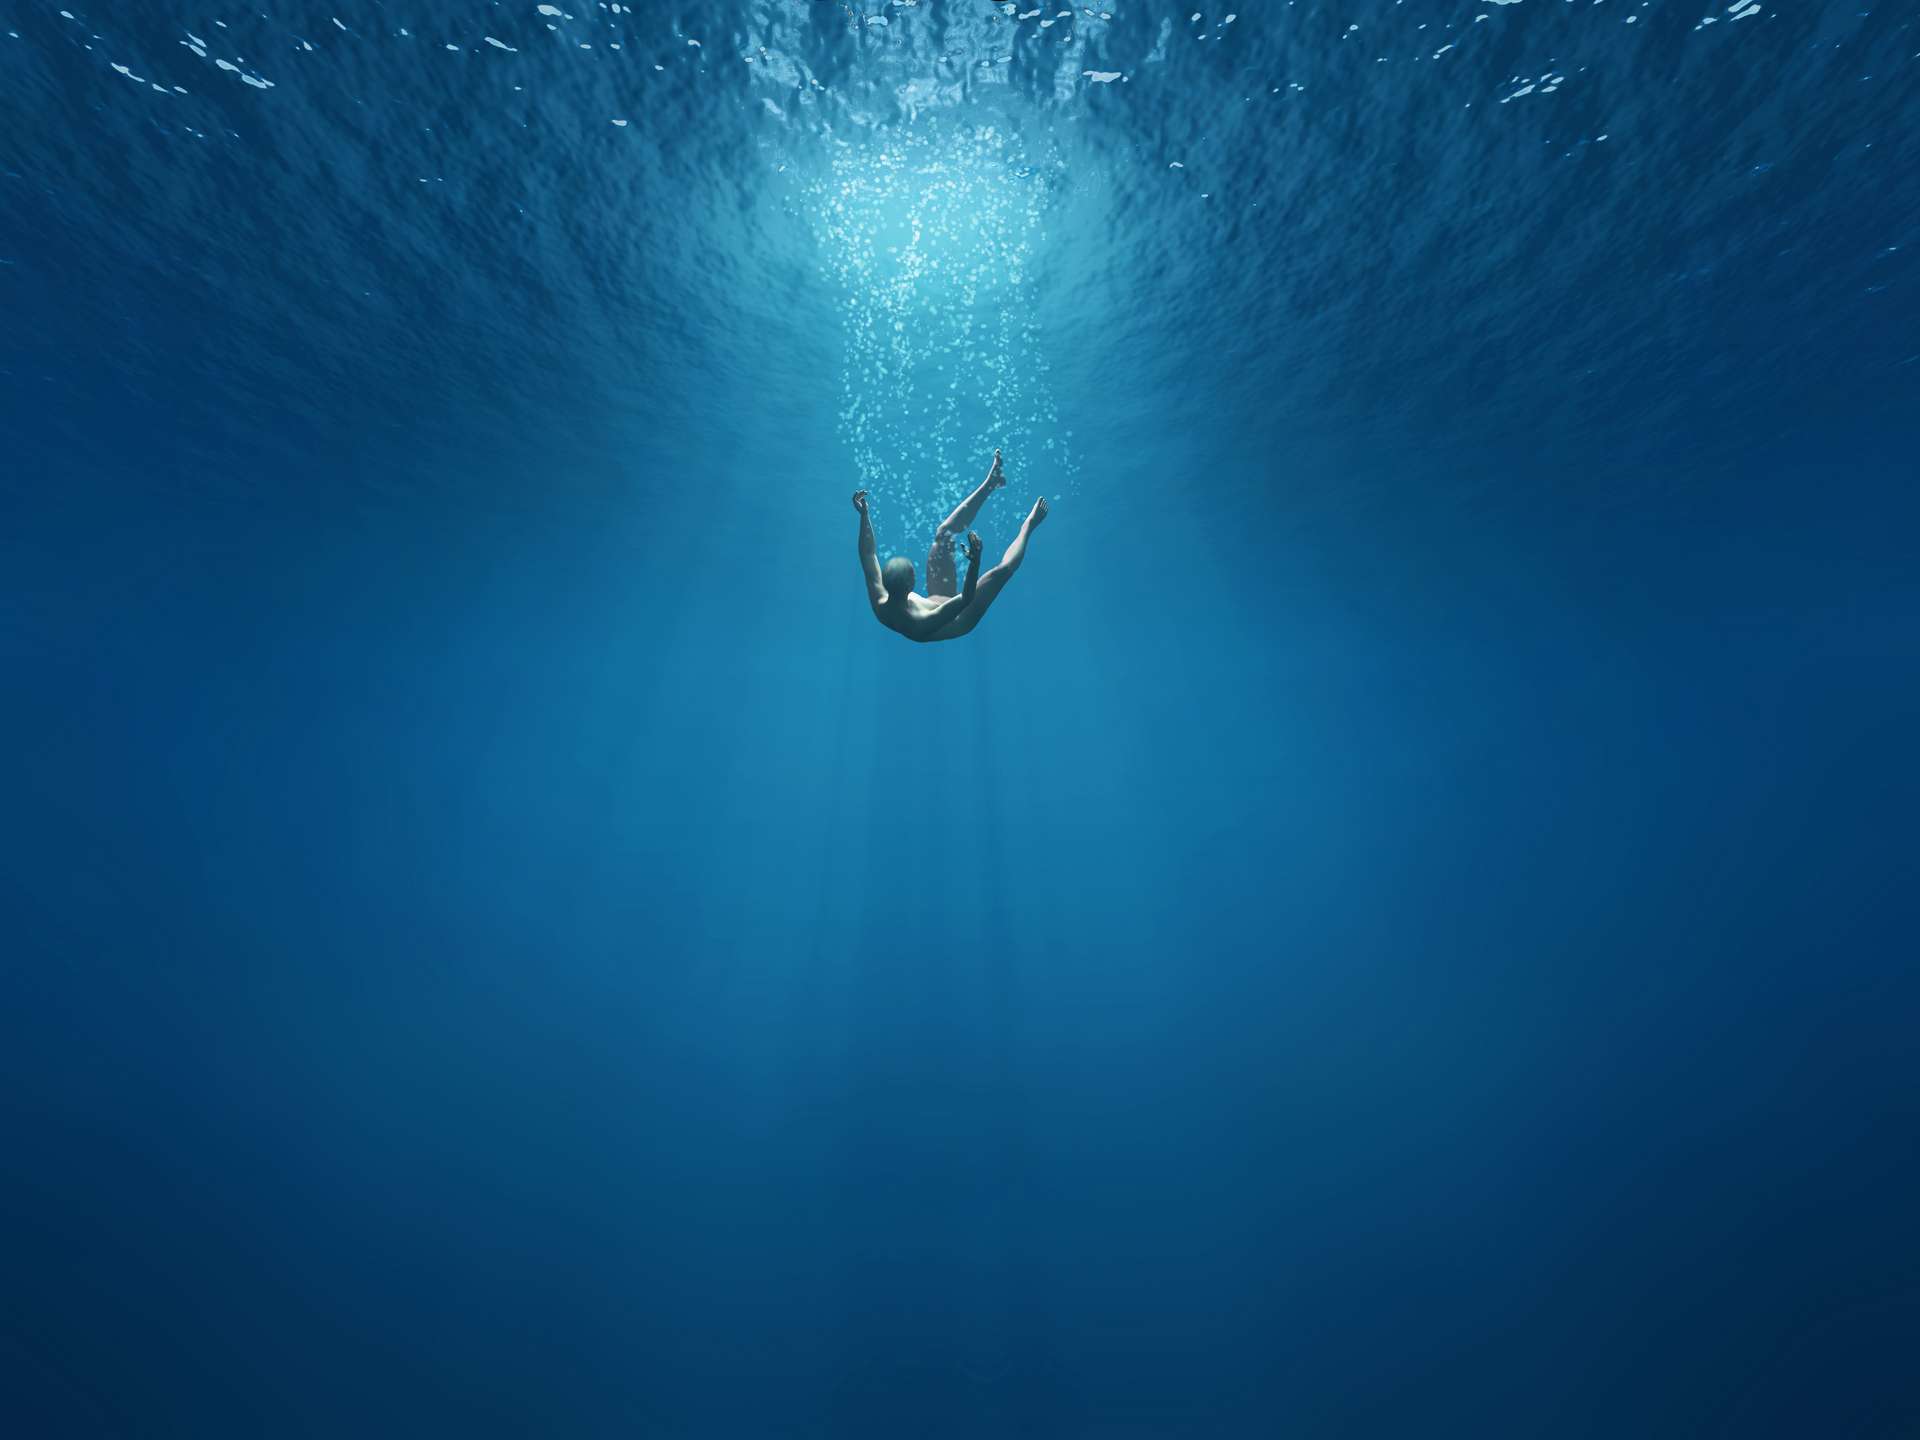 Into the water below. Тонущий человек. Человек тонет в океане. Падение в воду. Тонущий человек под водой.